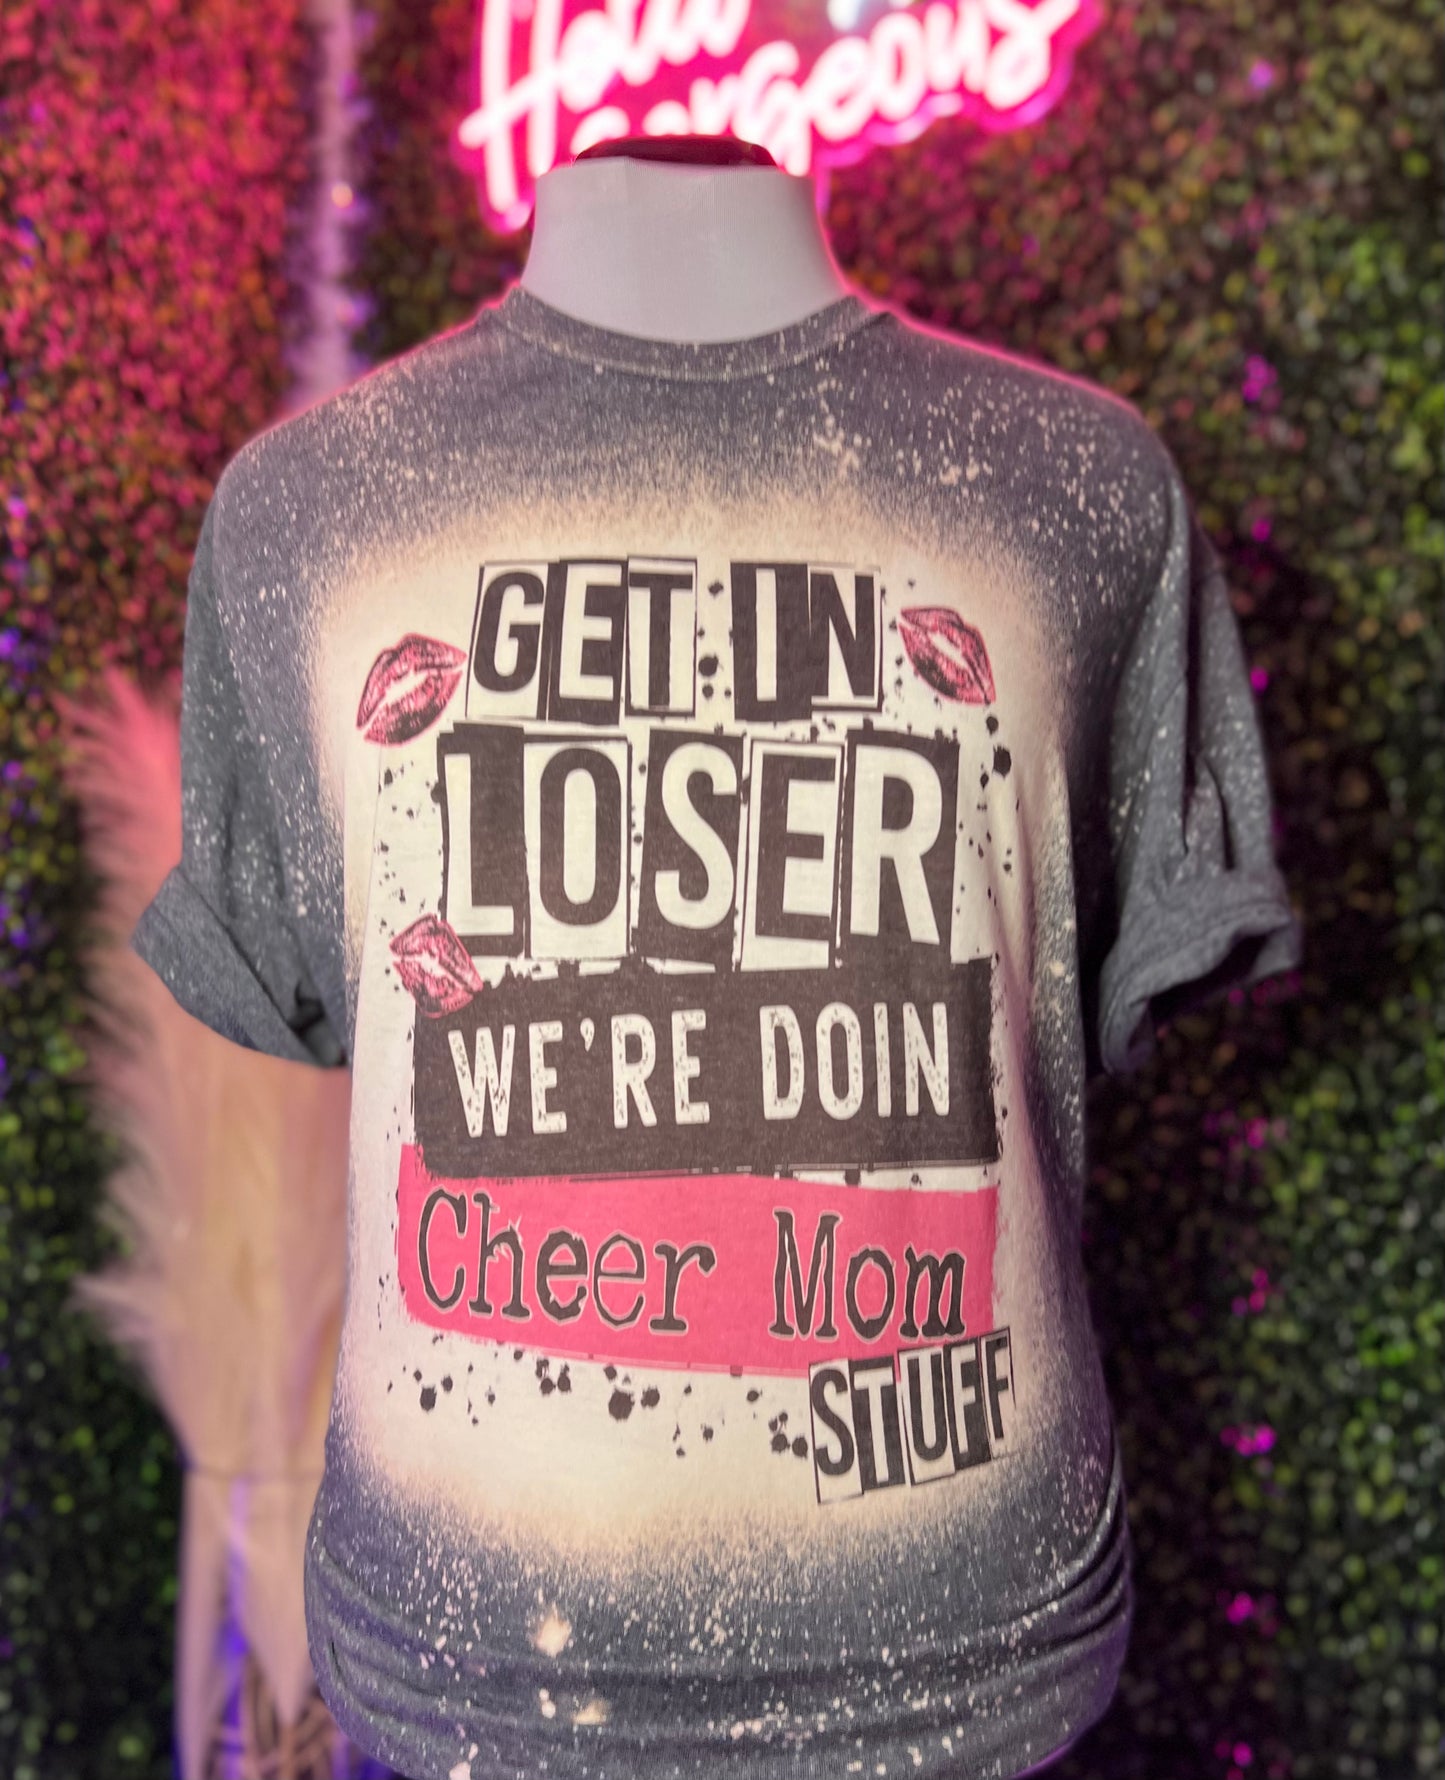 Get in Loser we’re doing Cheer Mom Stuff